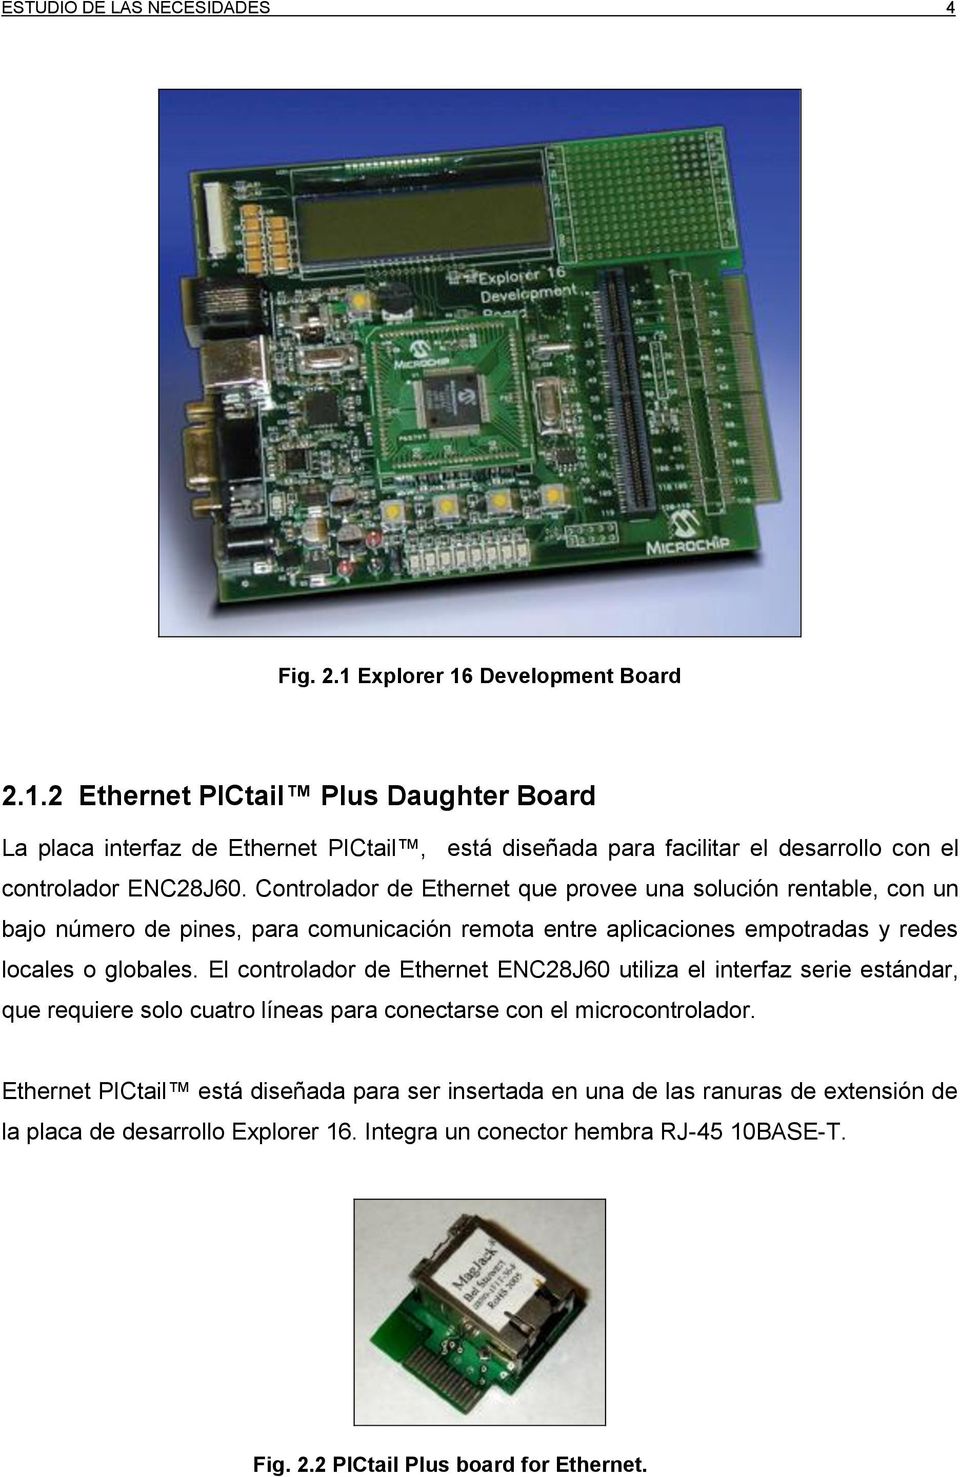 El controlador de Ethernet ENC28J60 utiliza el interfaz serie estándar, que requiere solo cuatro líneas para conectarse con el microcontrolador.